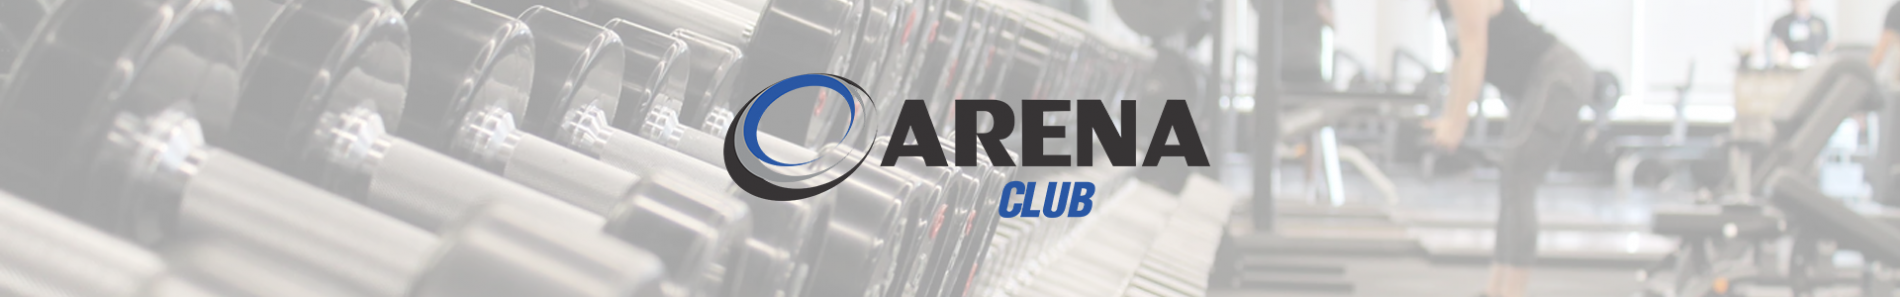 Catálogo Arena Club